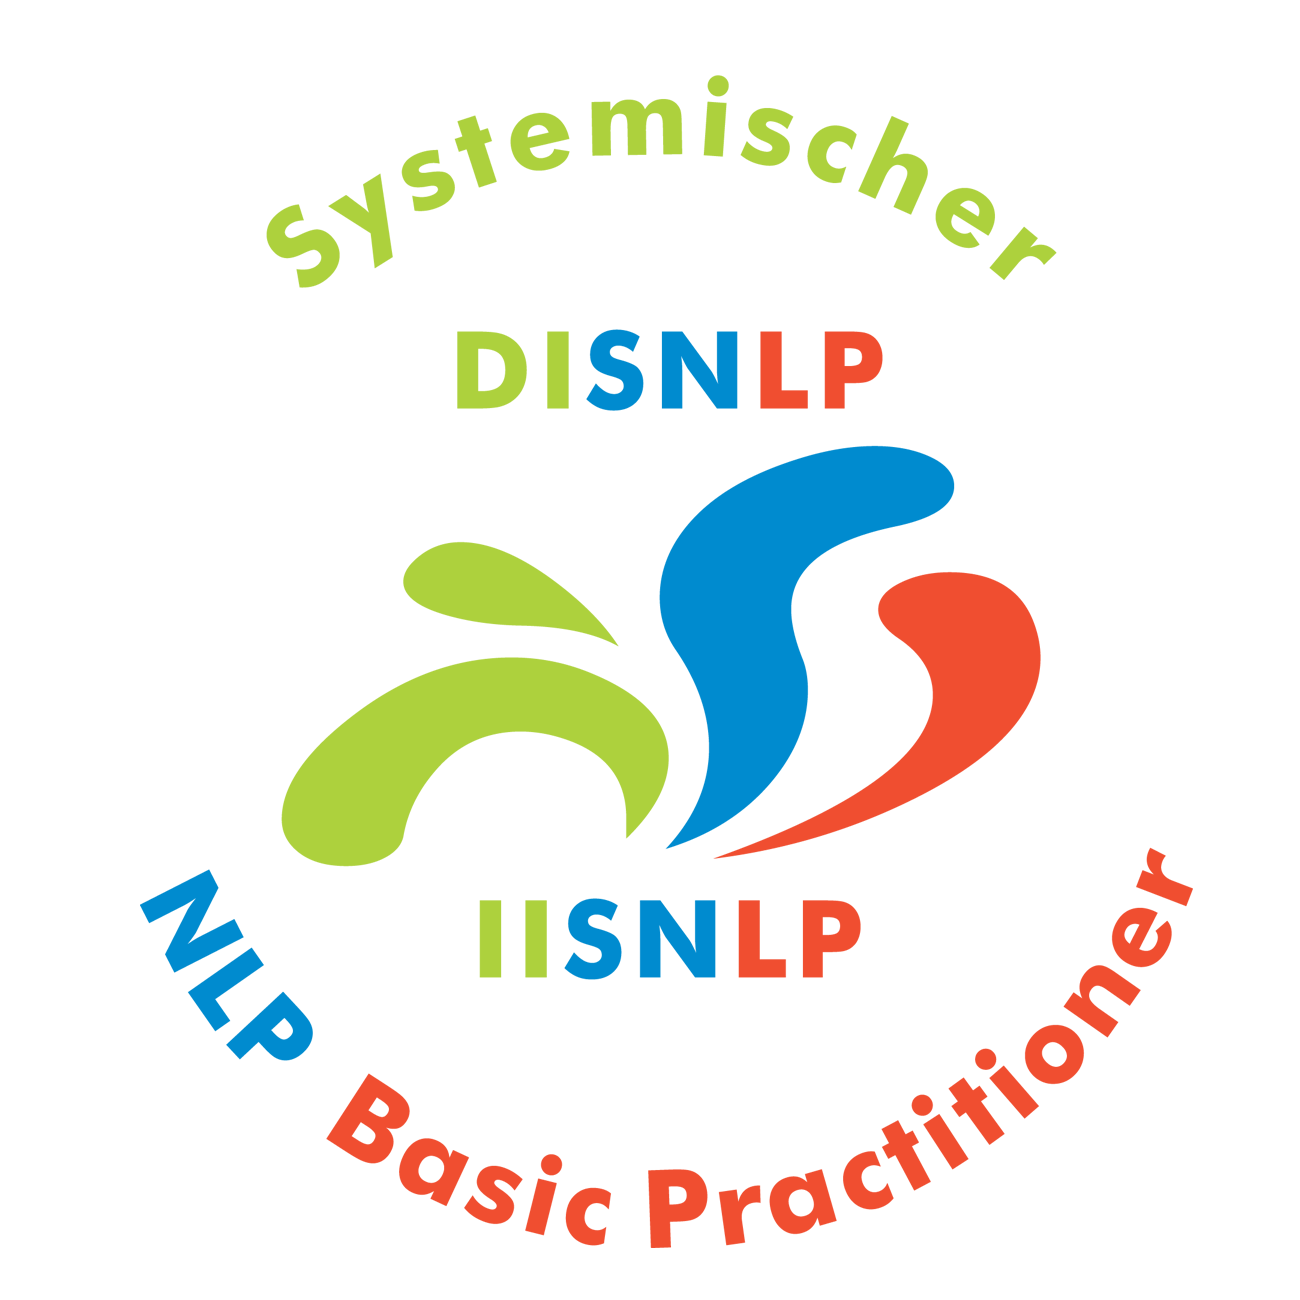 Seminar Selbstbewusstsein, Selbstvertrauen, Selbstwert, Selbstsicherheit stärken Passau mit NLP Coaching Kurs für mehr Selbstbewusstsein